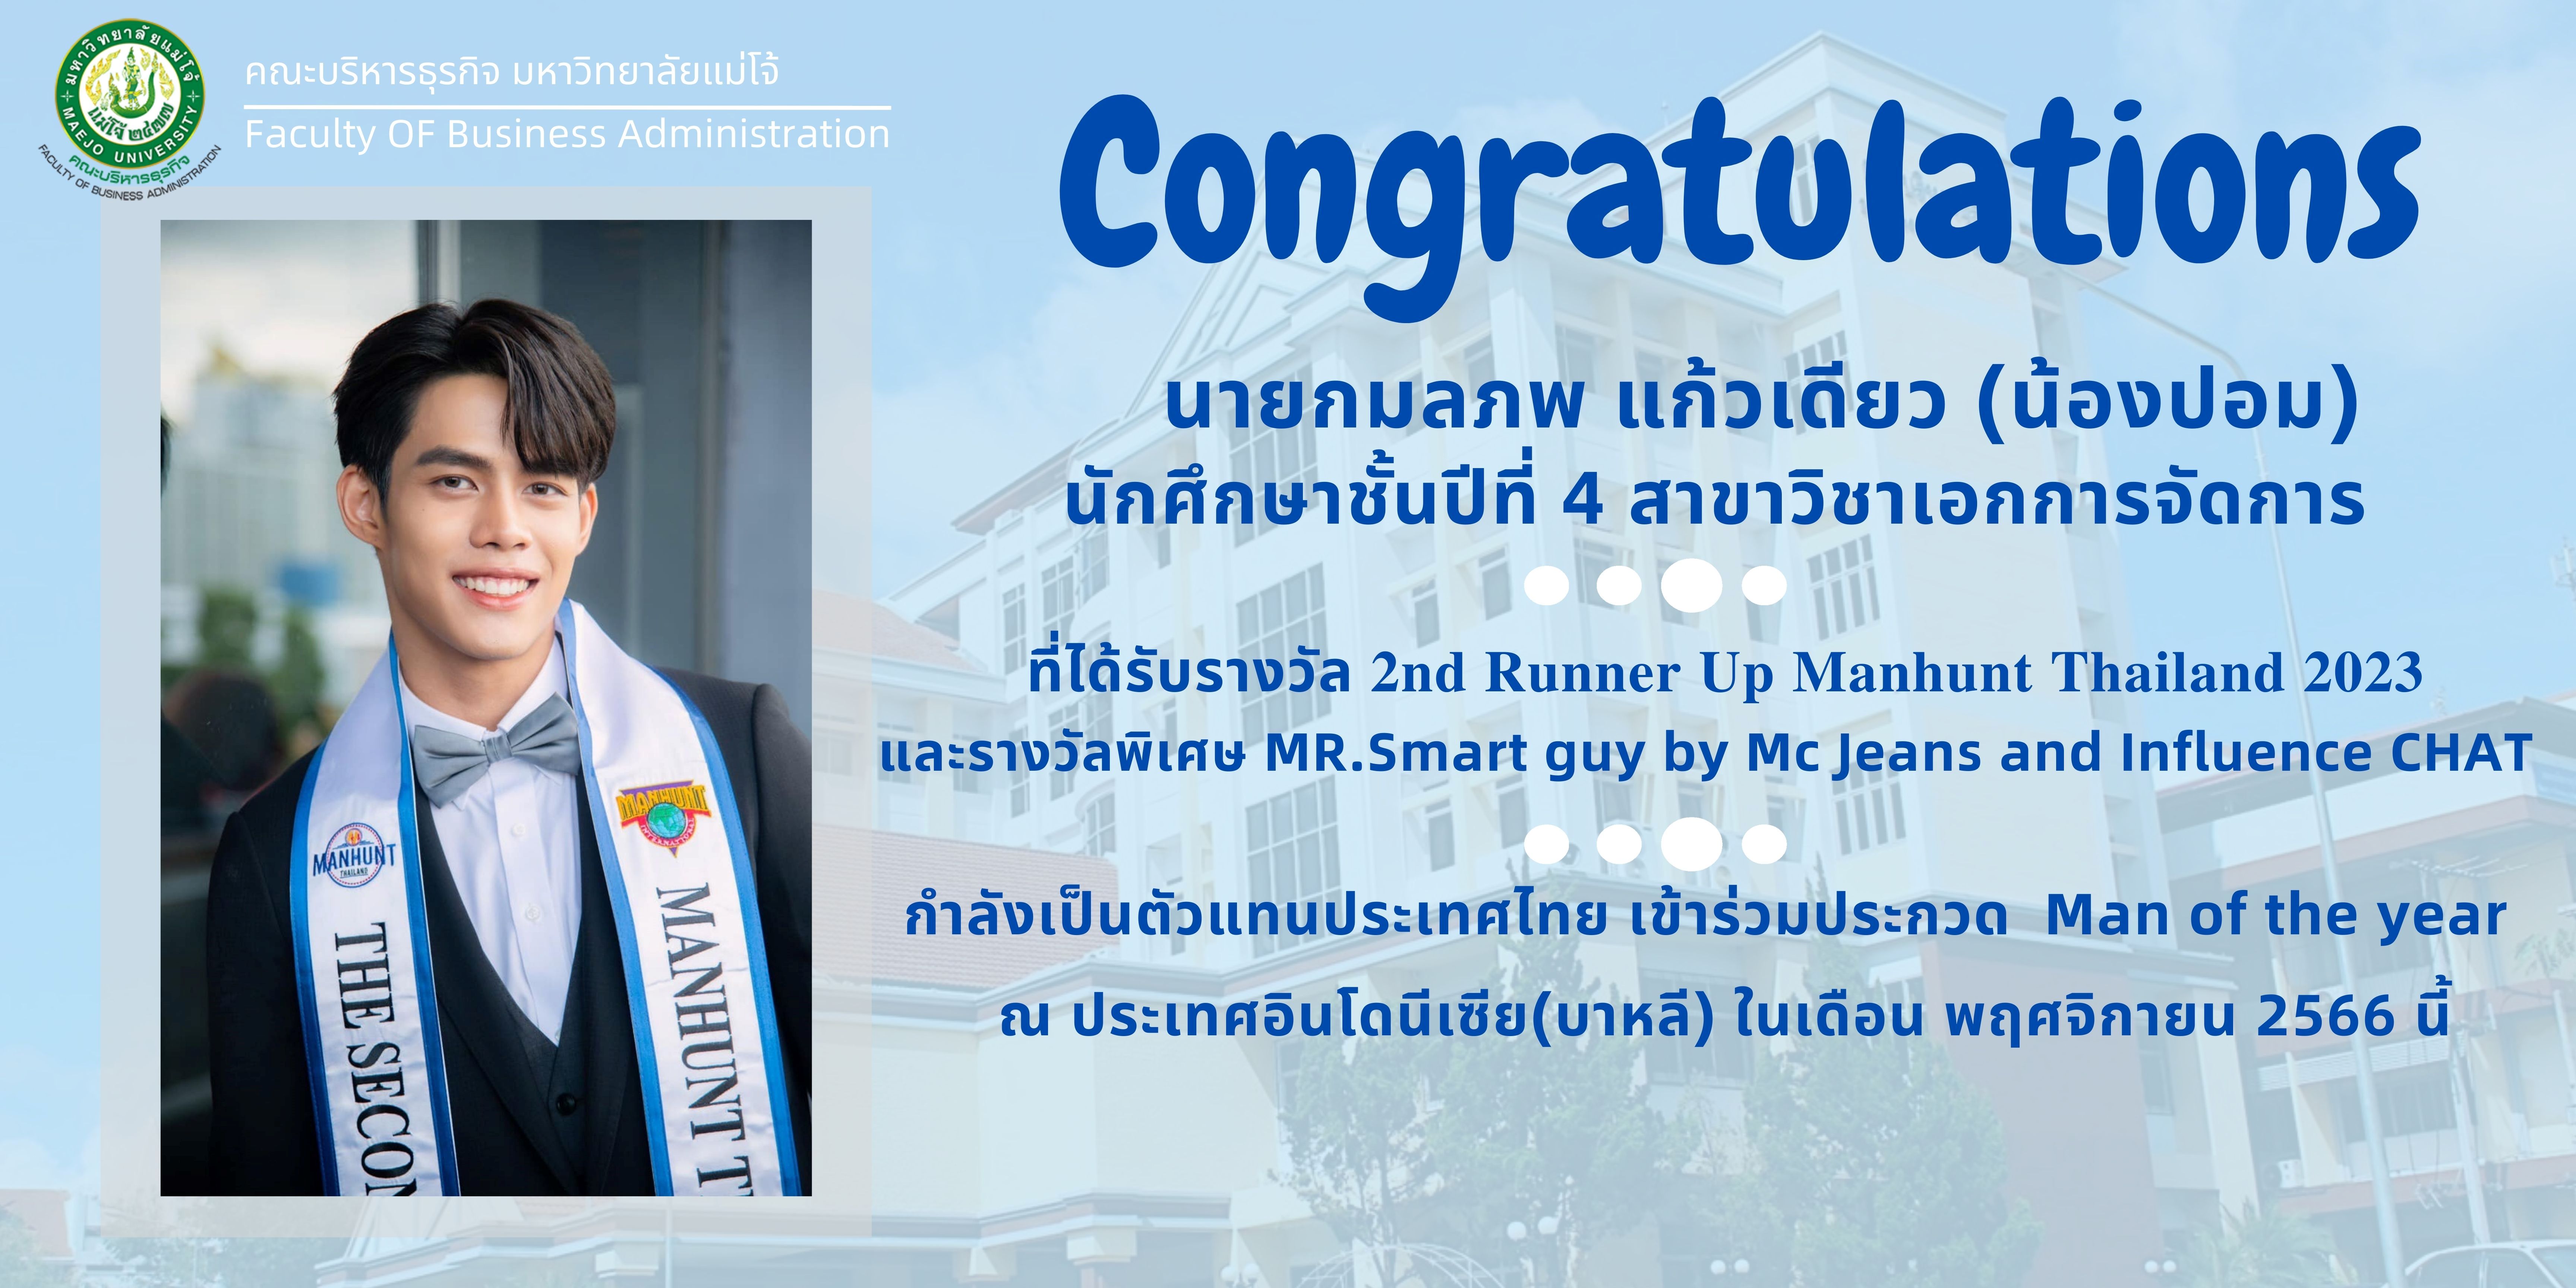 คณะบริหารธุรกิจขอแสดงความยินดีกับ นายกมลภพ แก้วเดียว (น้องปอม) นักศึกษาชั้นปีที่ 4 สาขาวิชาการจัดการ ที่ได้รับรางวัล 2nd Runner Up Manhunt Thailand2023